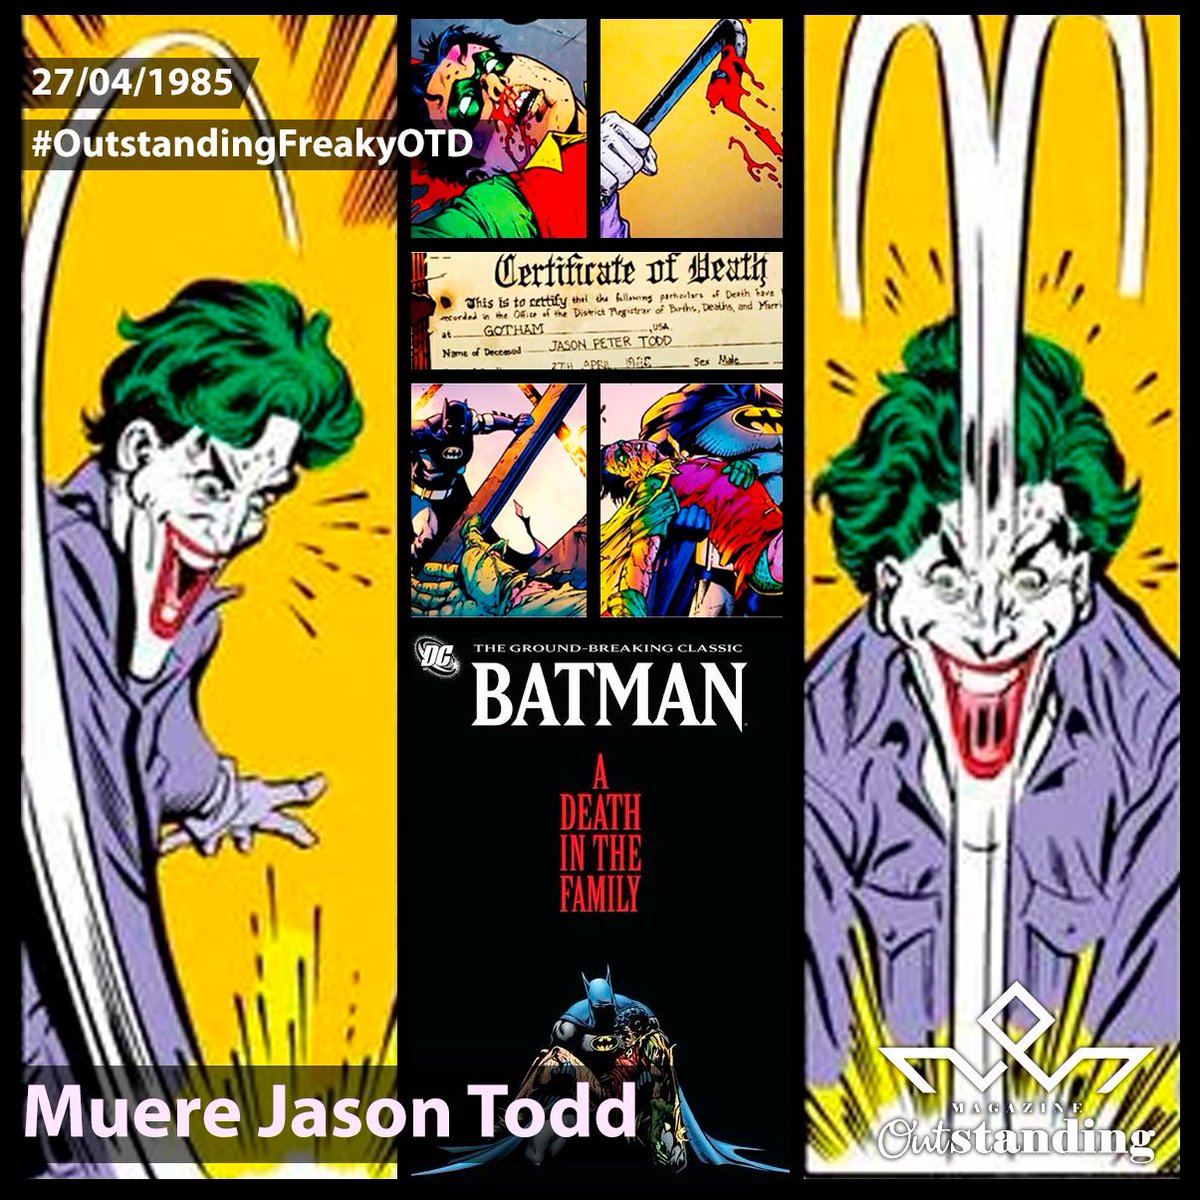 #UnDíaComoHoy, 27 de abril, pero de 1985, tras una votación telefónica, los lectores decidieron que Jason Todd fallecía a manos del Joker. #OutstandingFreakyOTD #OutstandingComics #ADeathInTheFamily #JasonTodd #Robin #Joker #Batman #DC #DCComics #Titans